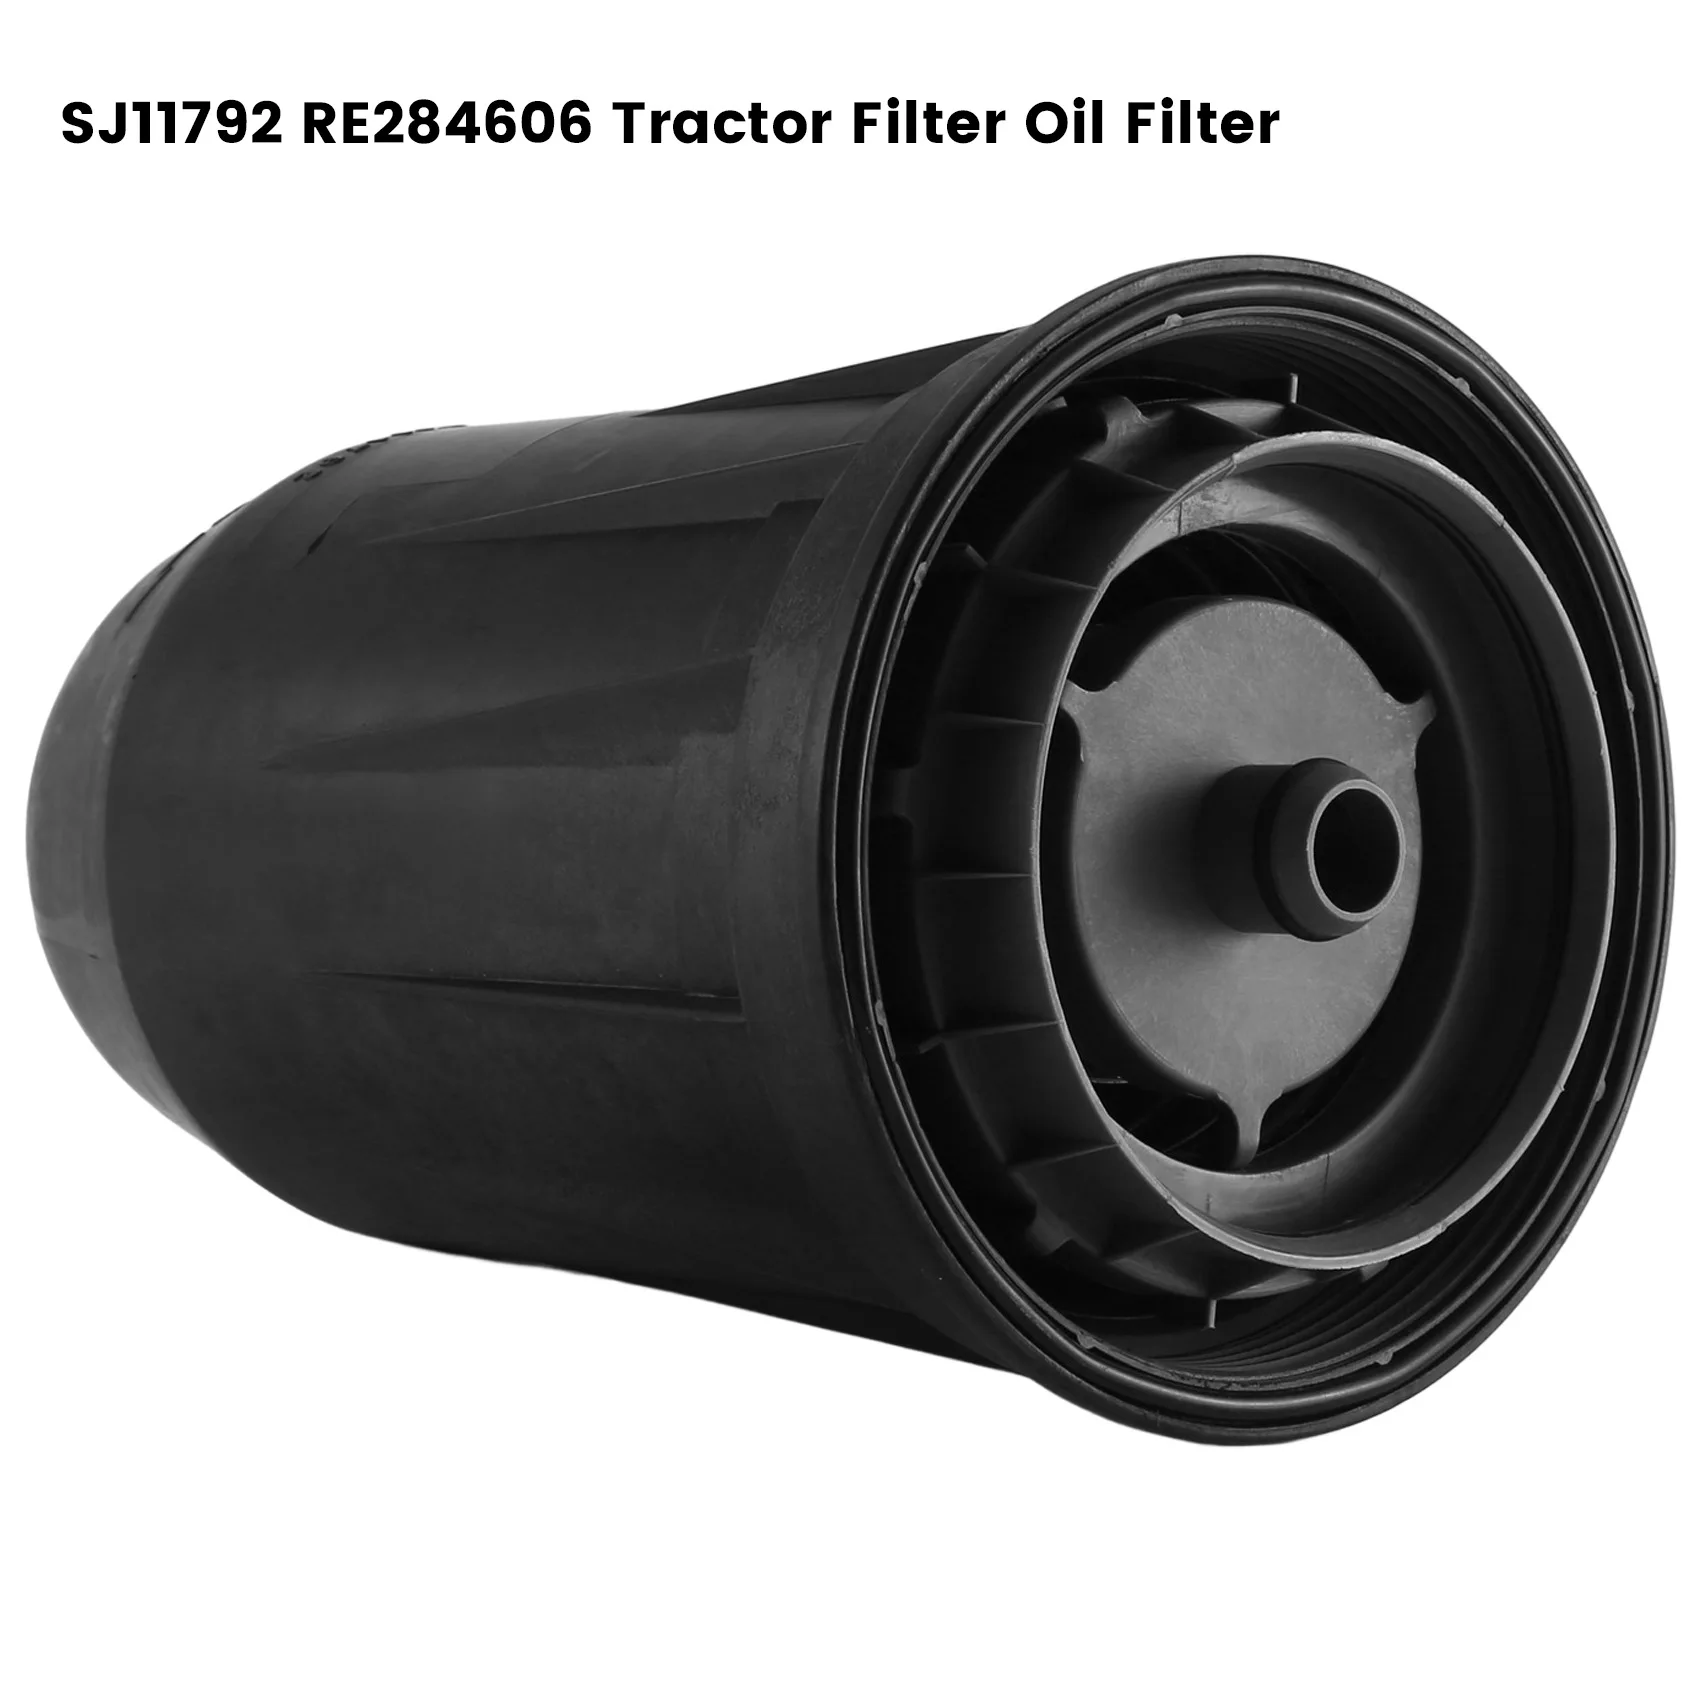 SJ11792 RE284606 Traktorja, Filter Olja, Filter za Traktor Loader Backhoe Več Modelov Hidravlično Olje Filter